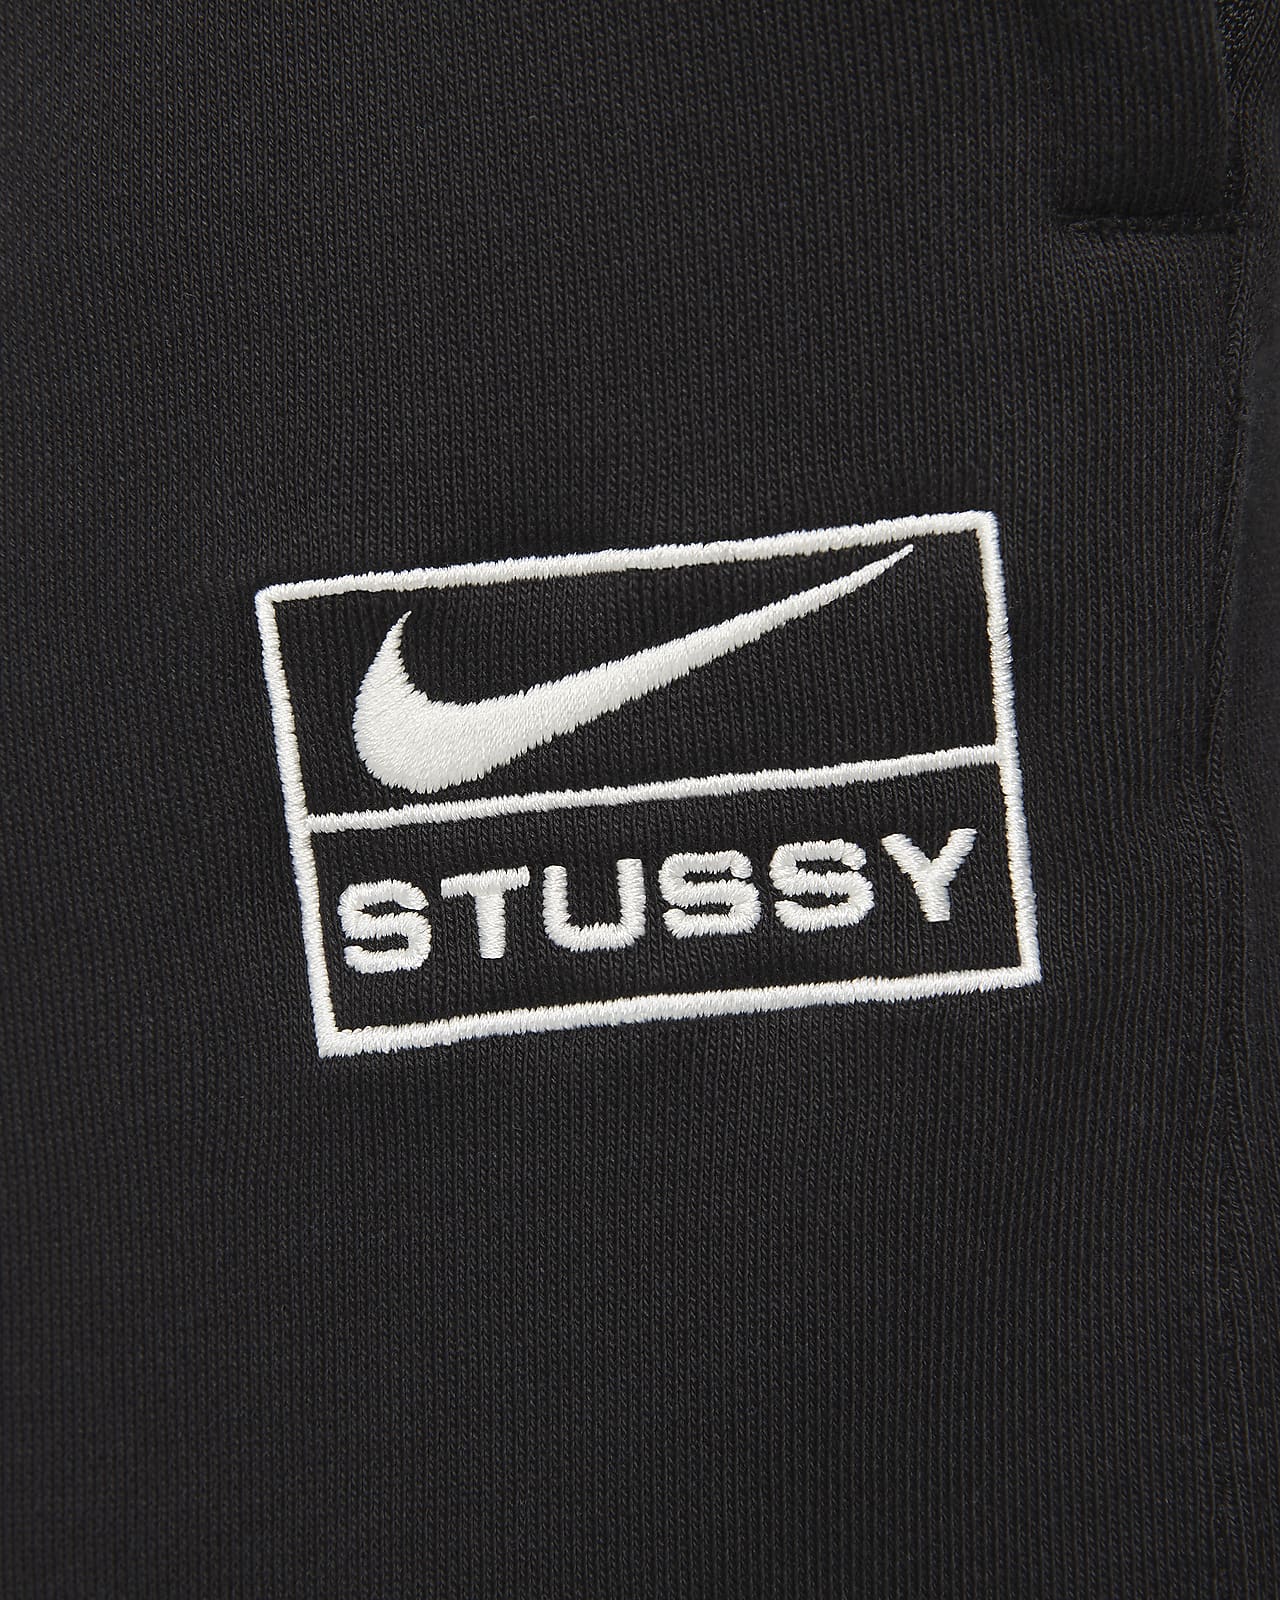 Nike x Stüssy Washed Fleece Pants. Nike.com